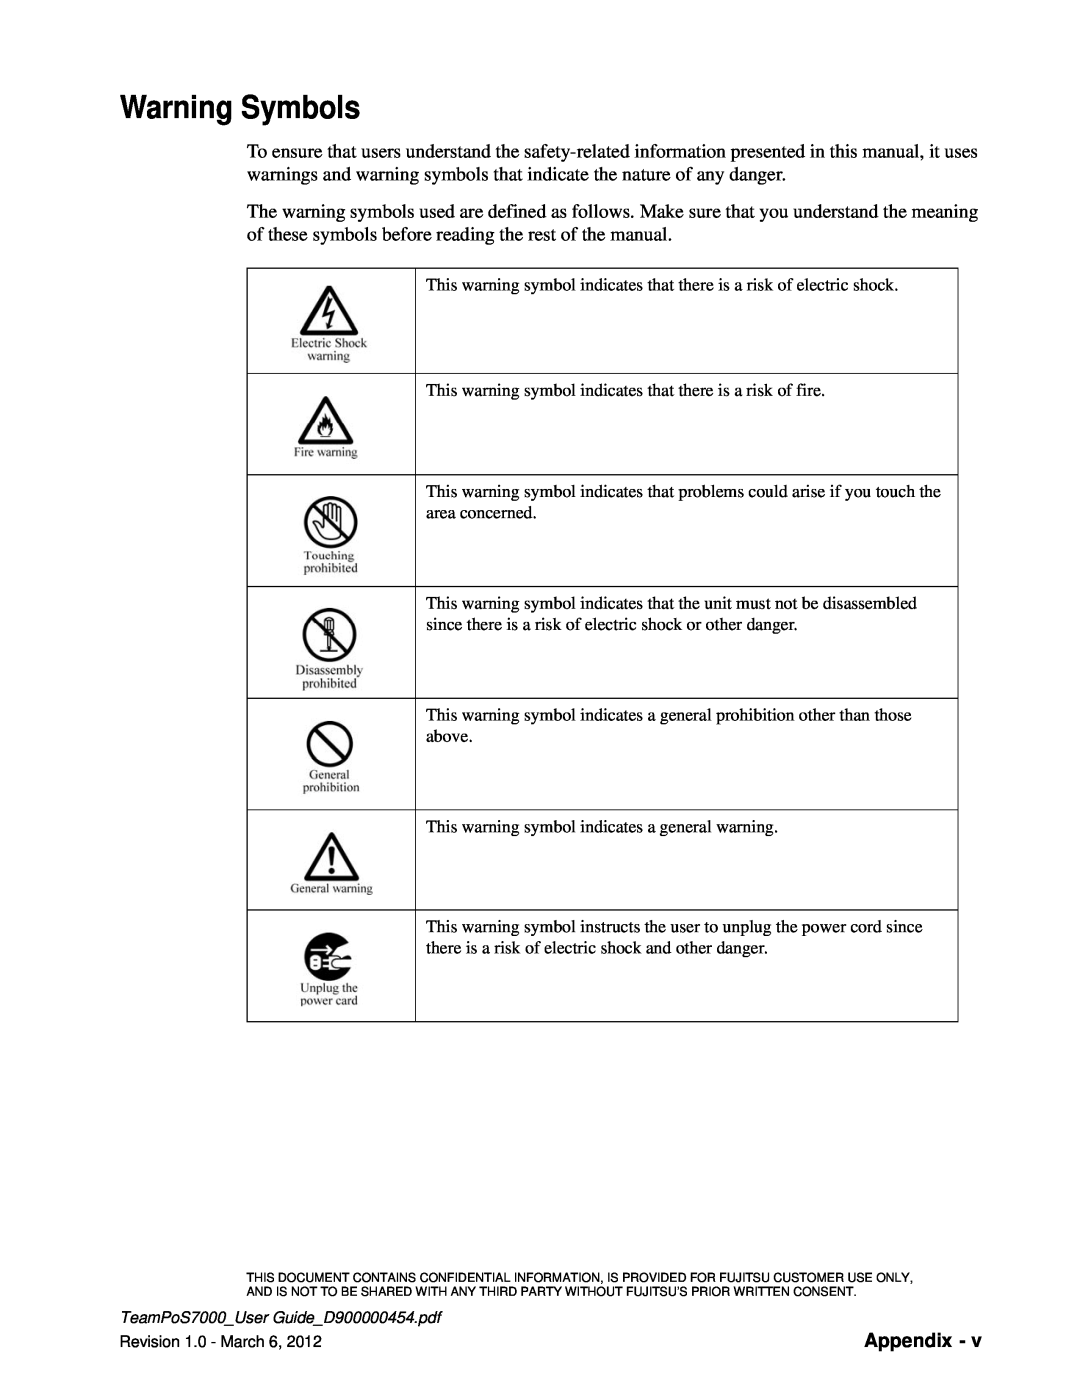 Fujitsu 7000 manual Warning Symbols, Appendix 